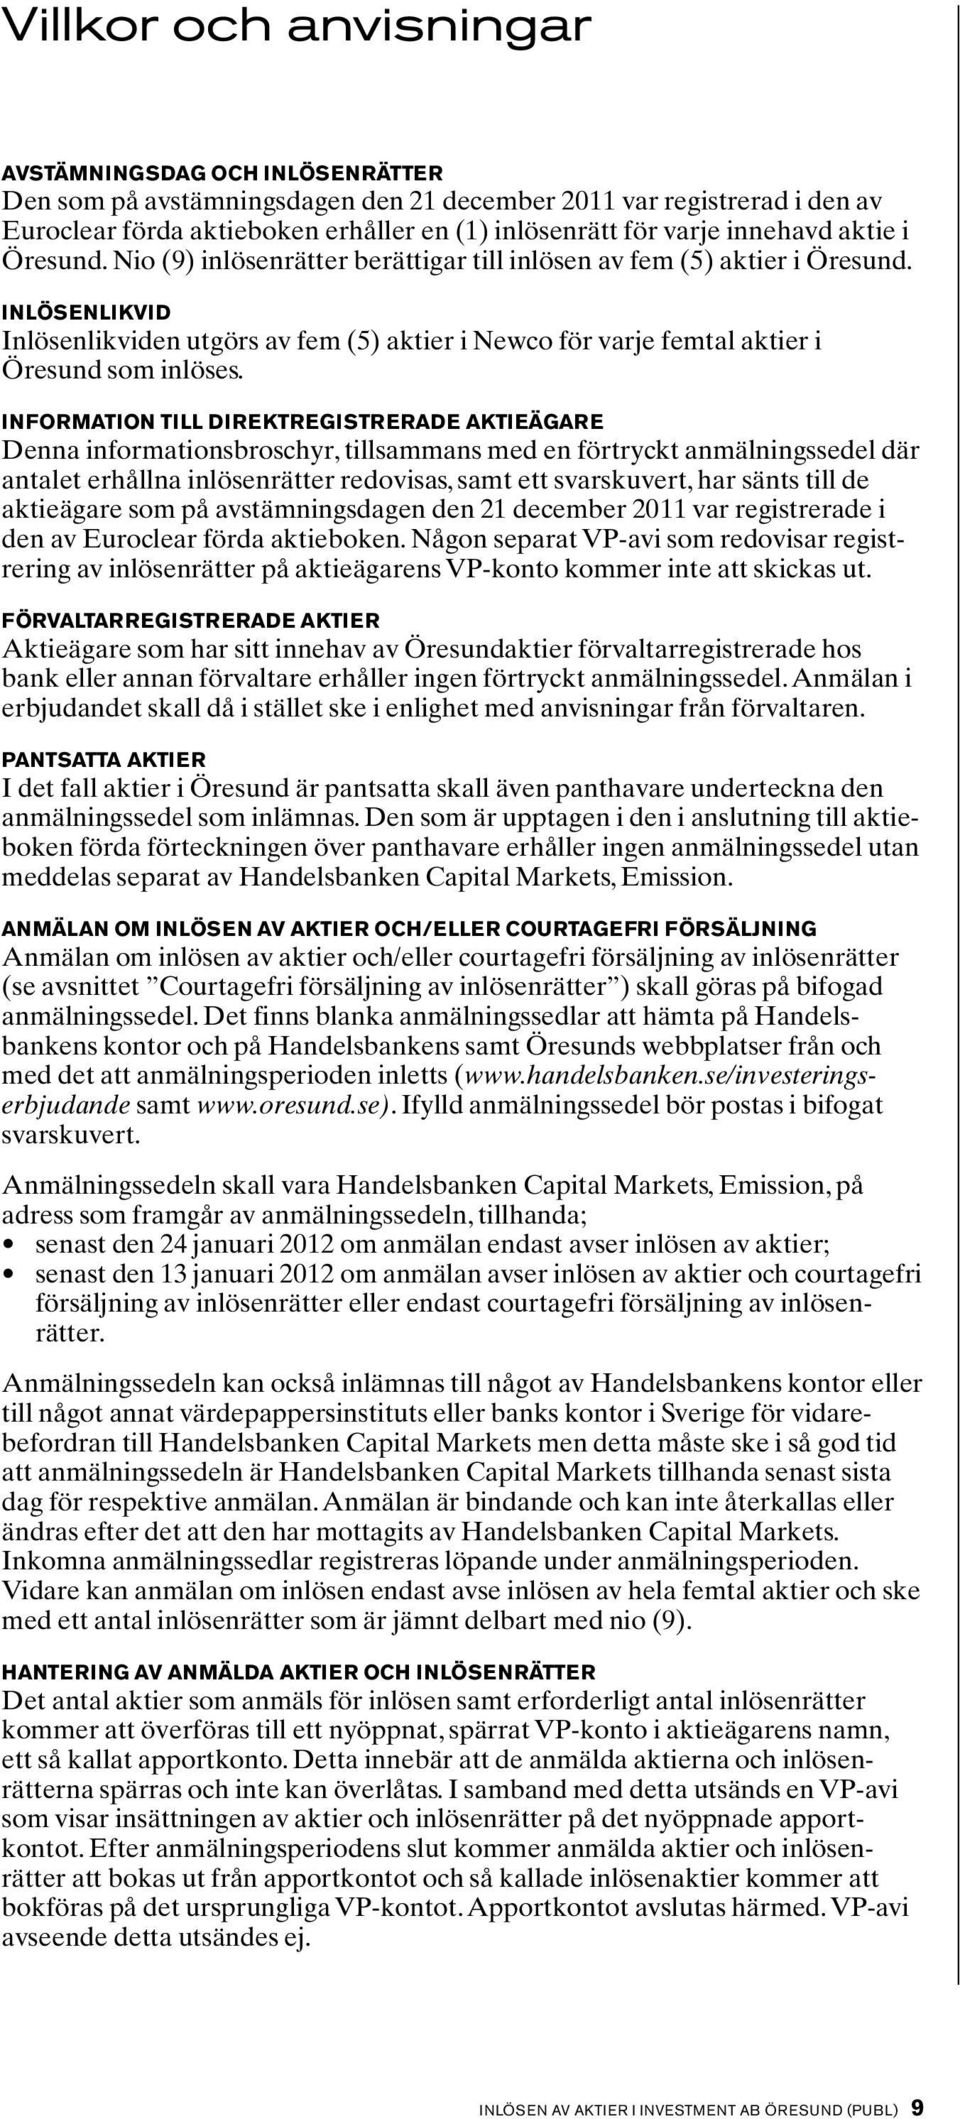 Inlösenlikvid Inlösenlikviden utgörs av fem (5) aktier i Newco för varje femtal aktier i Öresund som inlöses.